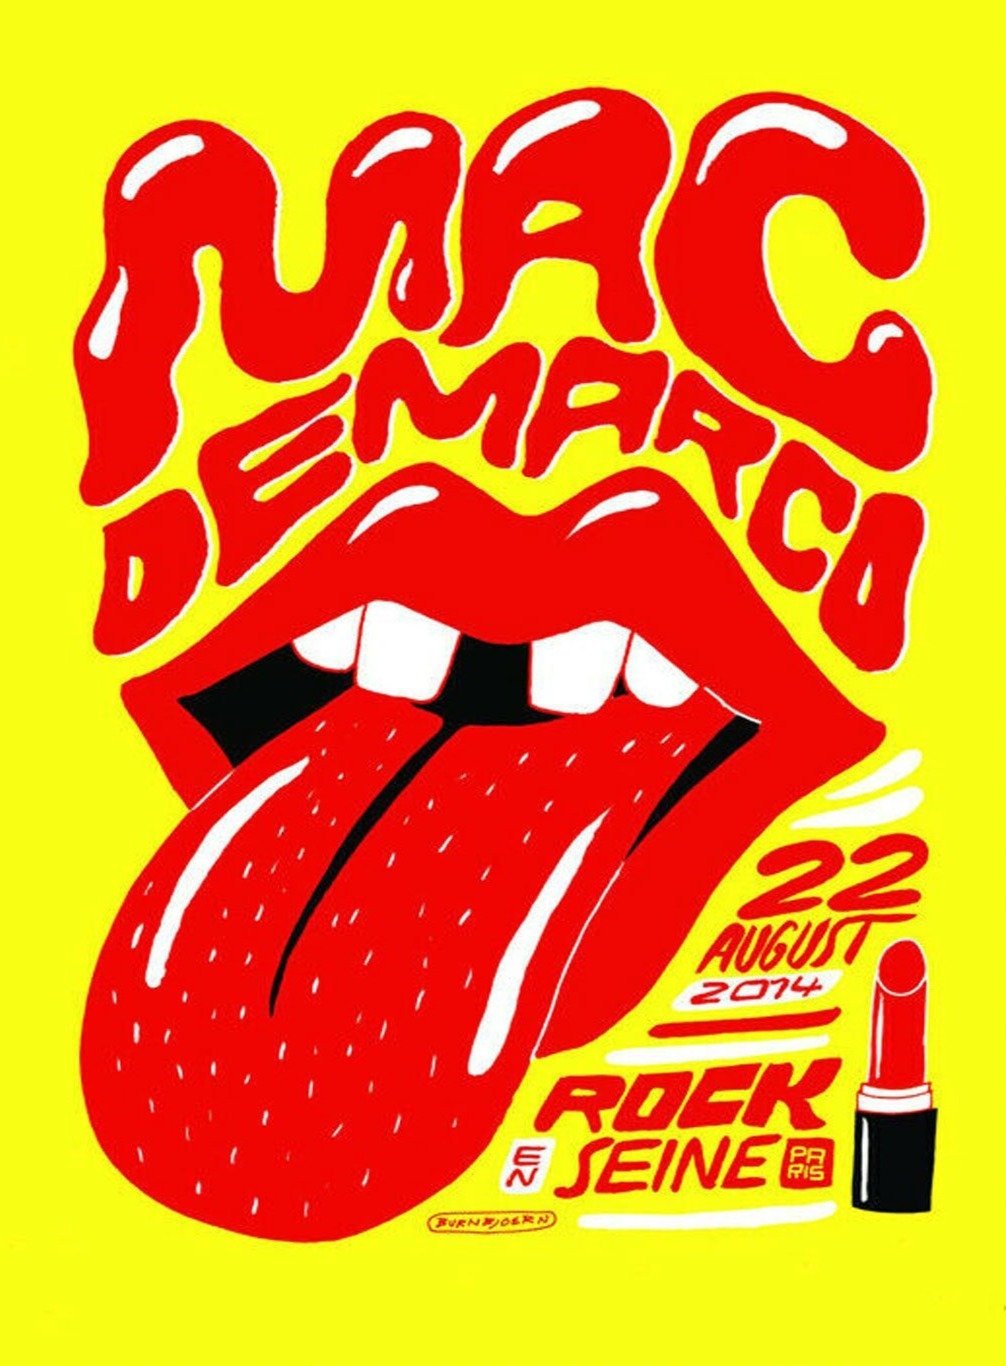 Mac DeMarco - Rock En Seine - Printed Originals